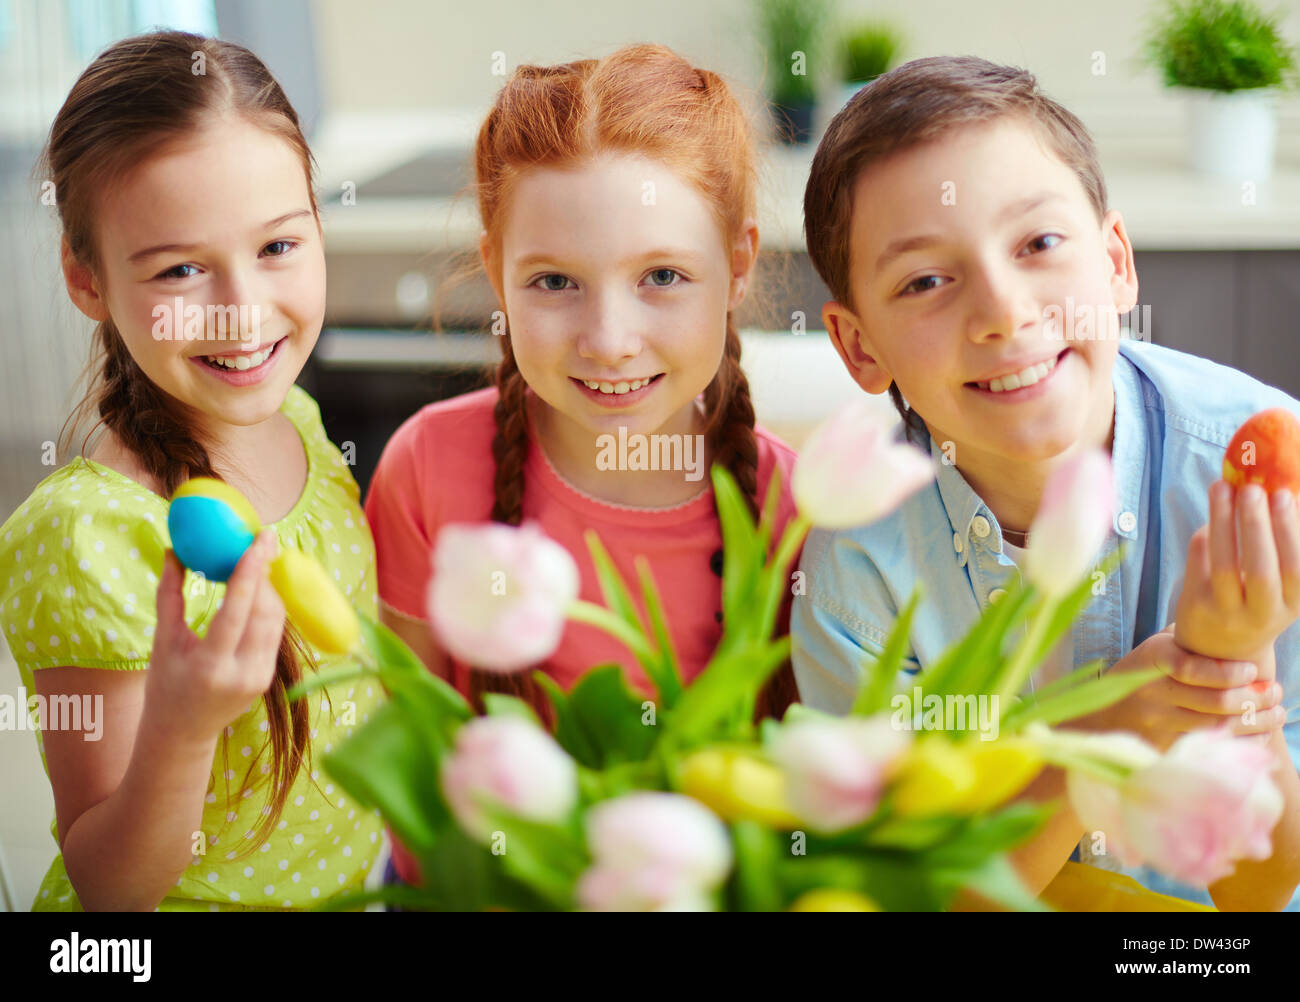 Porträt von drei lächelnden Kindern mit Ostereiern Stockfoto